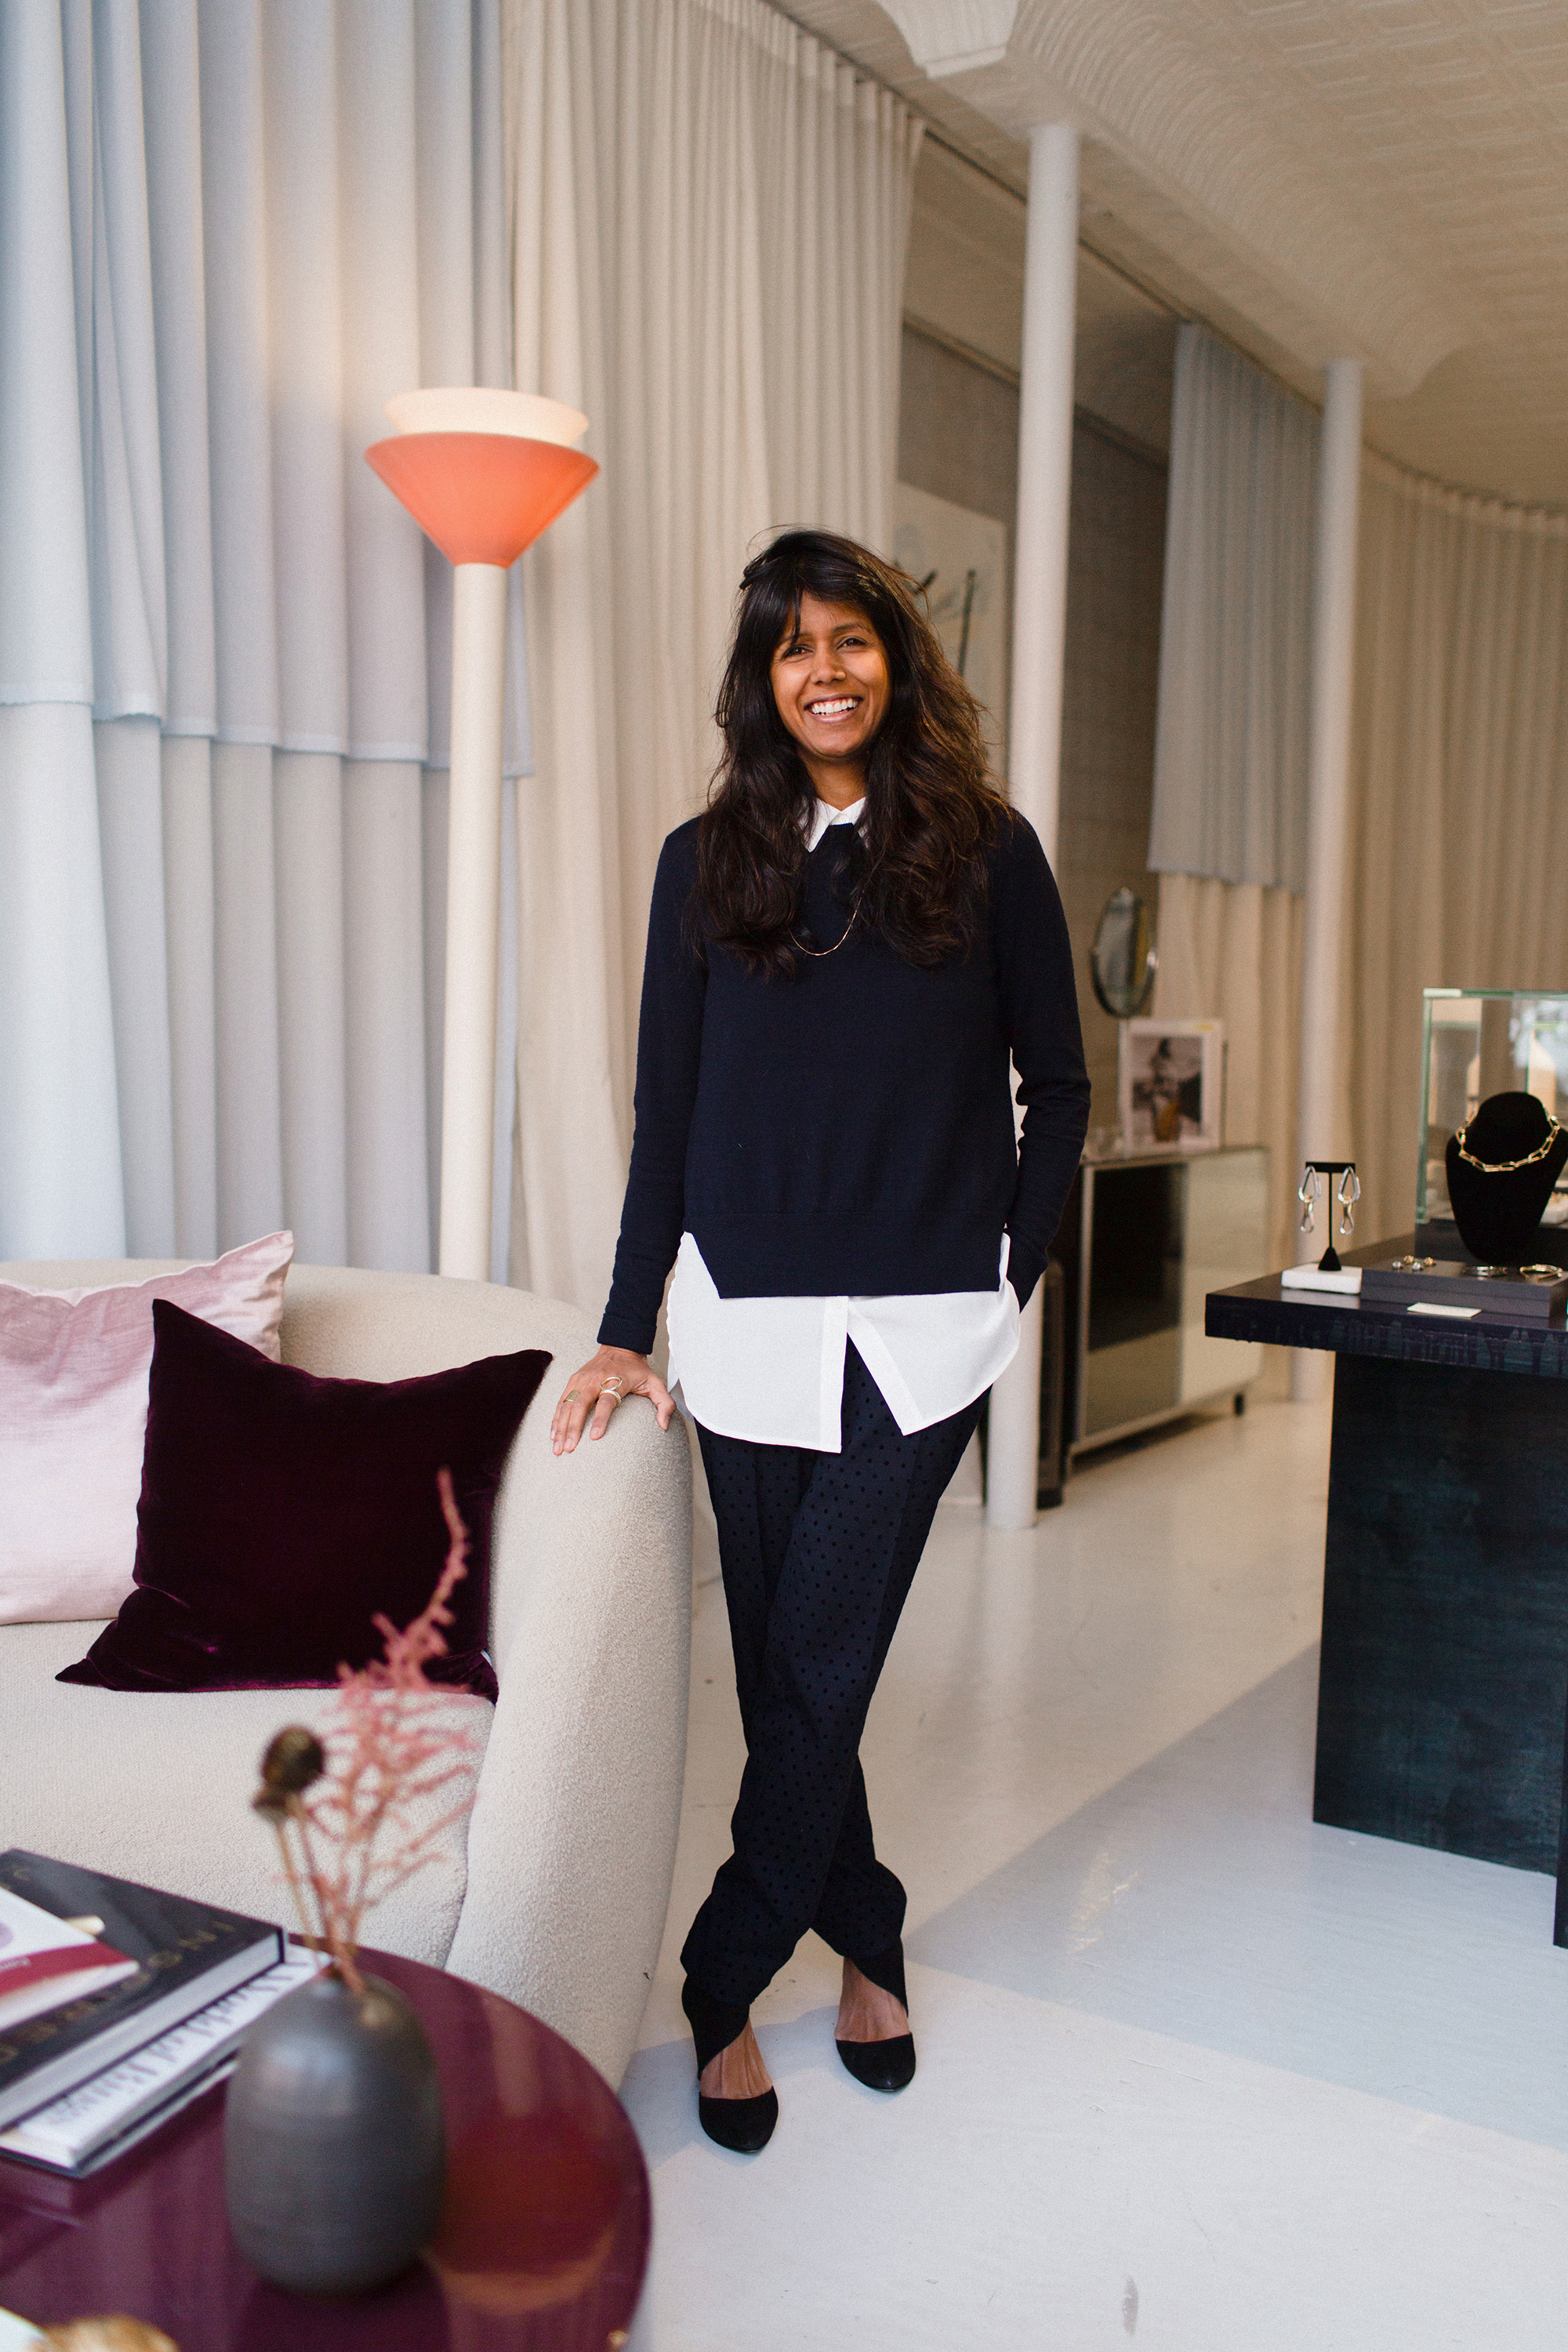 Reshma Patel, owner of Quiet Storms